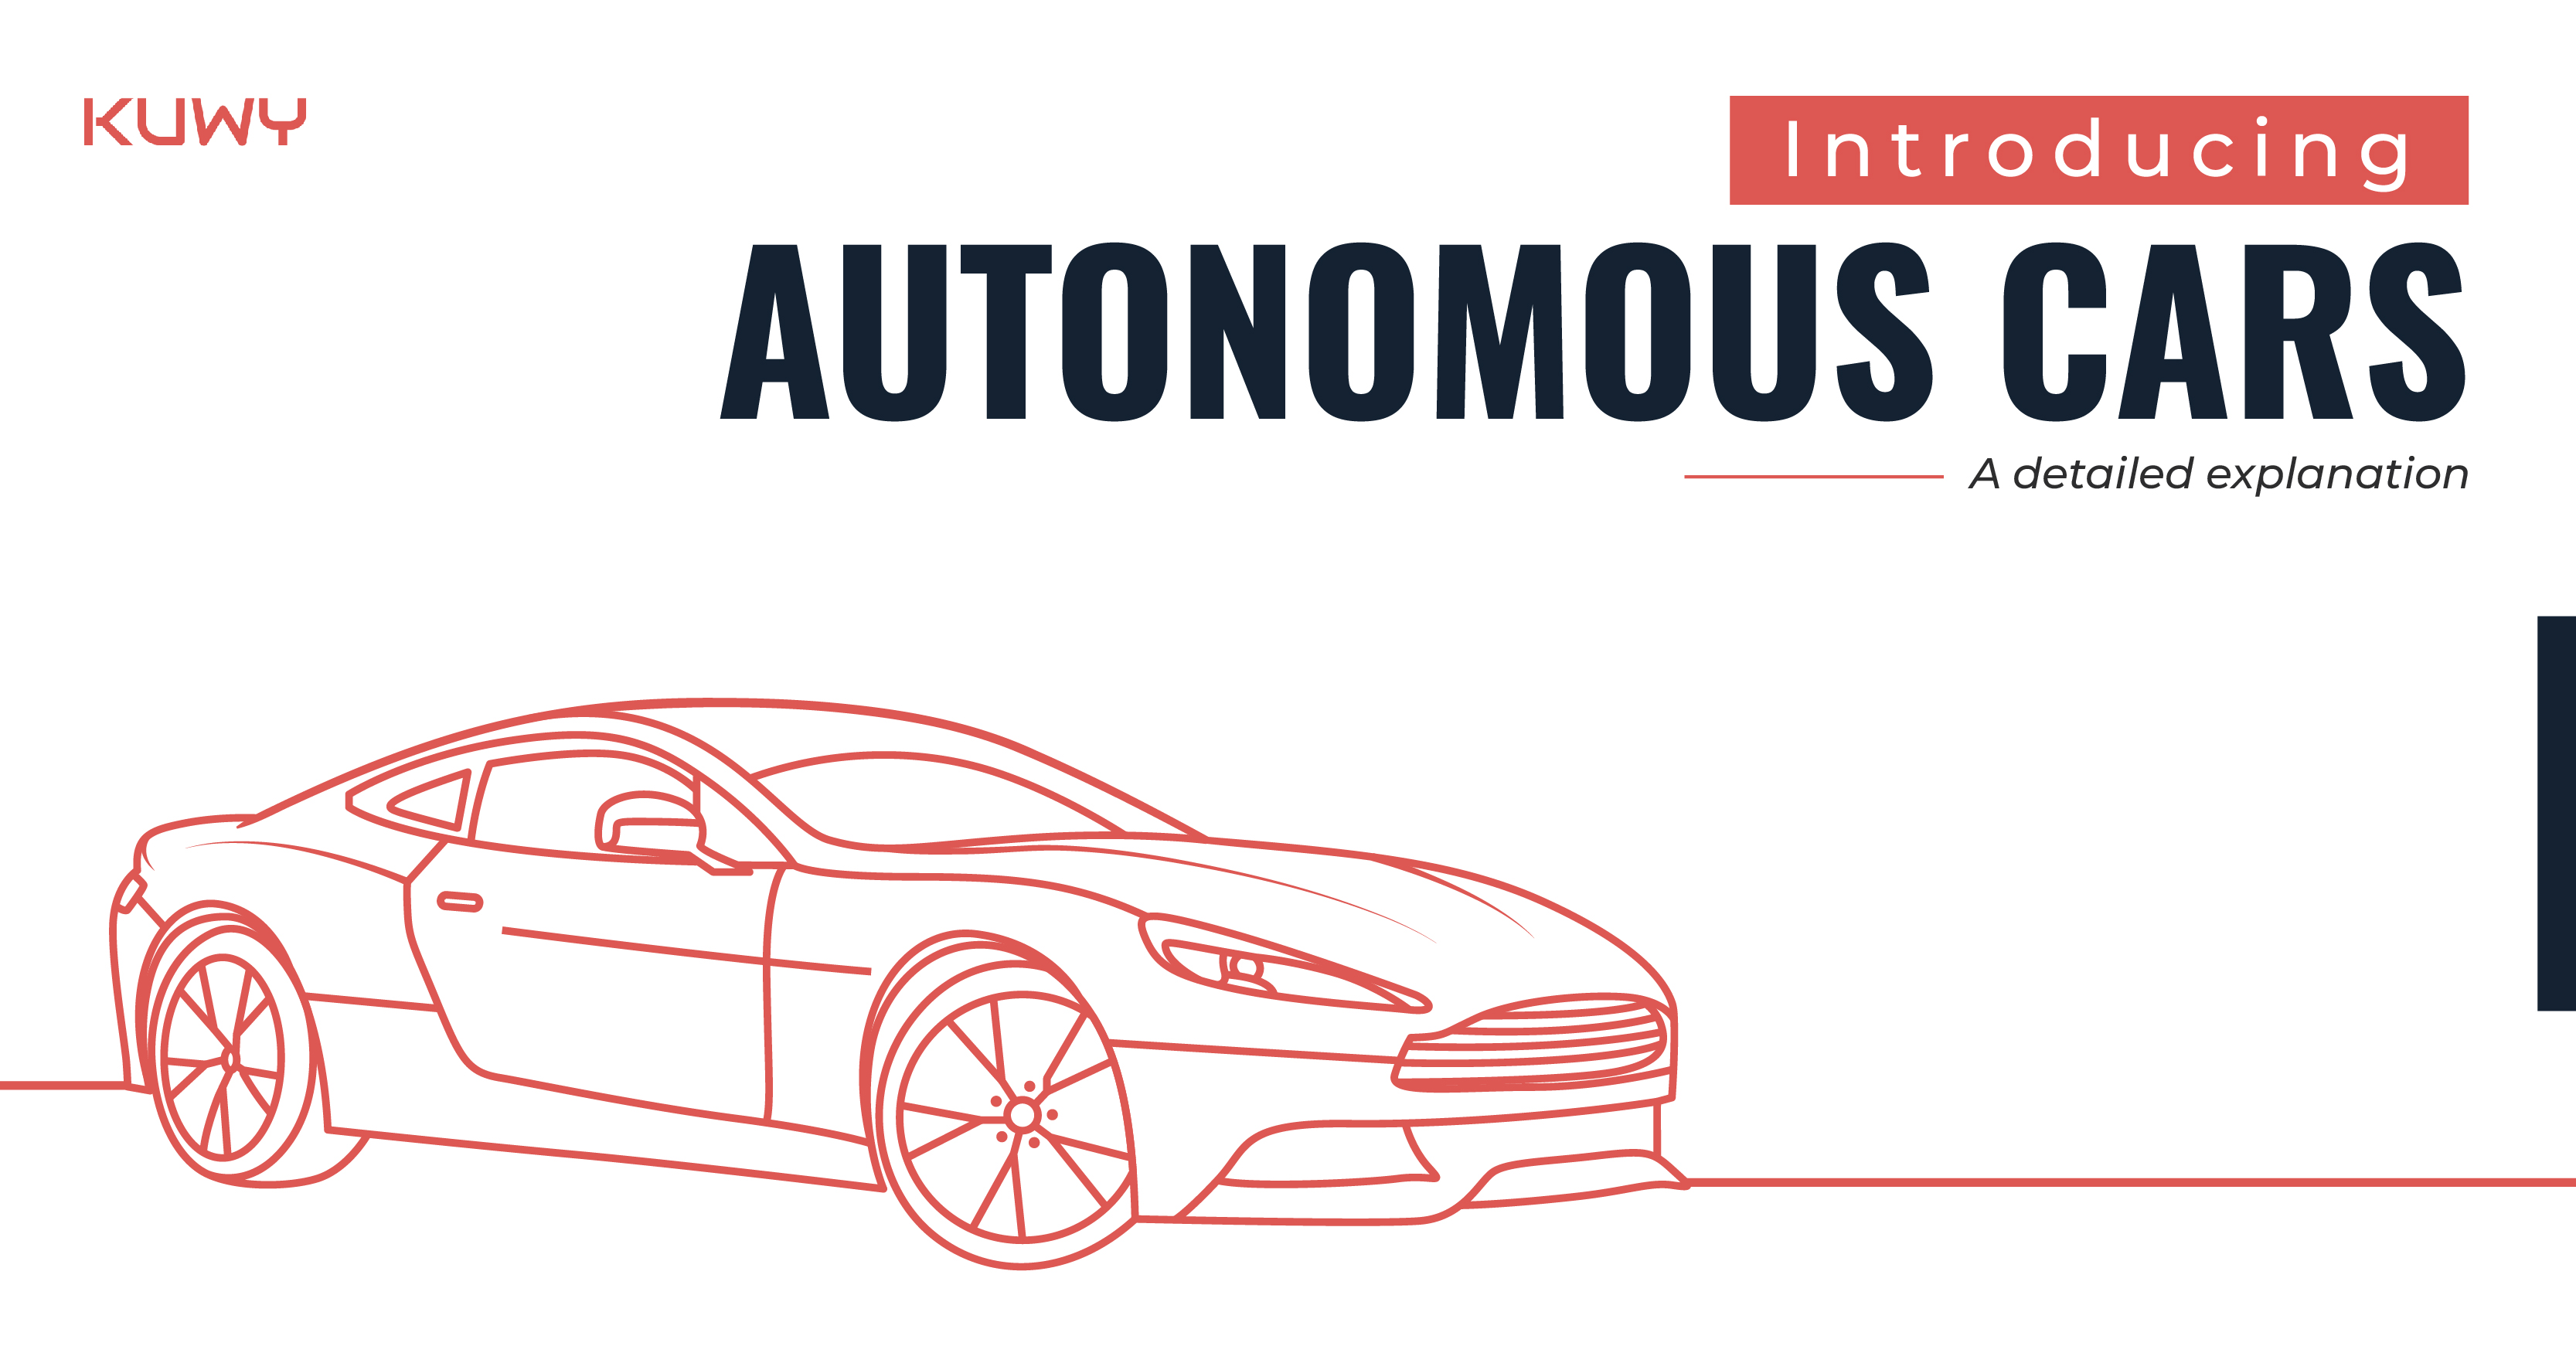 Introducing autonomous cars: A detailed explanation.